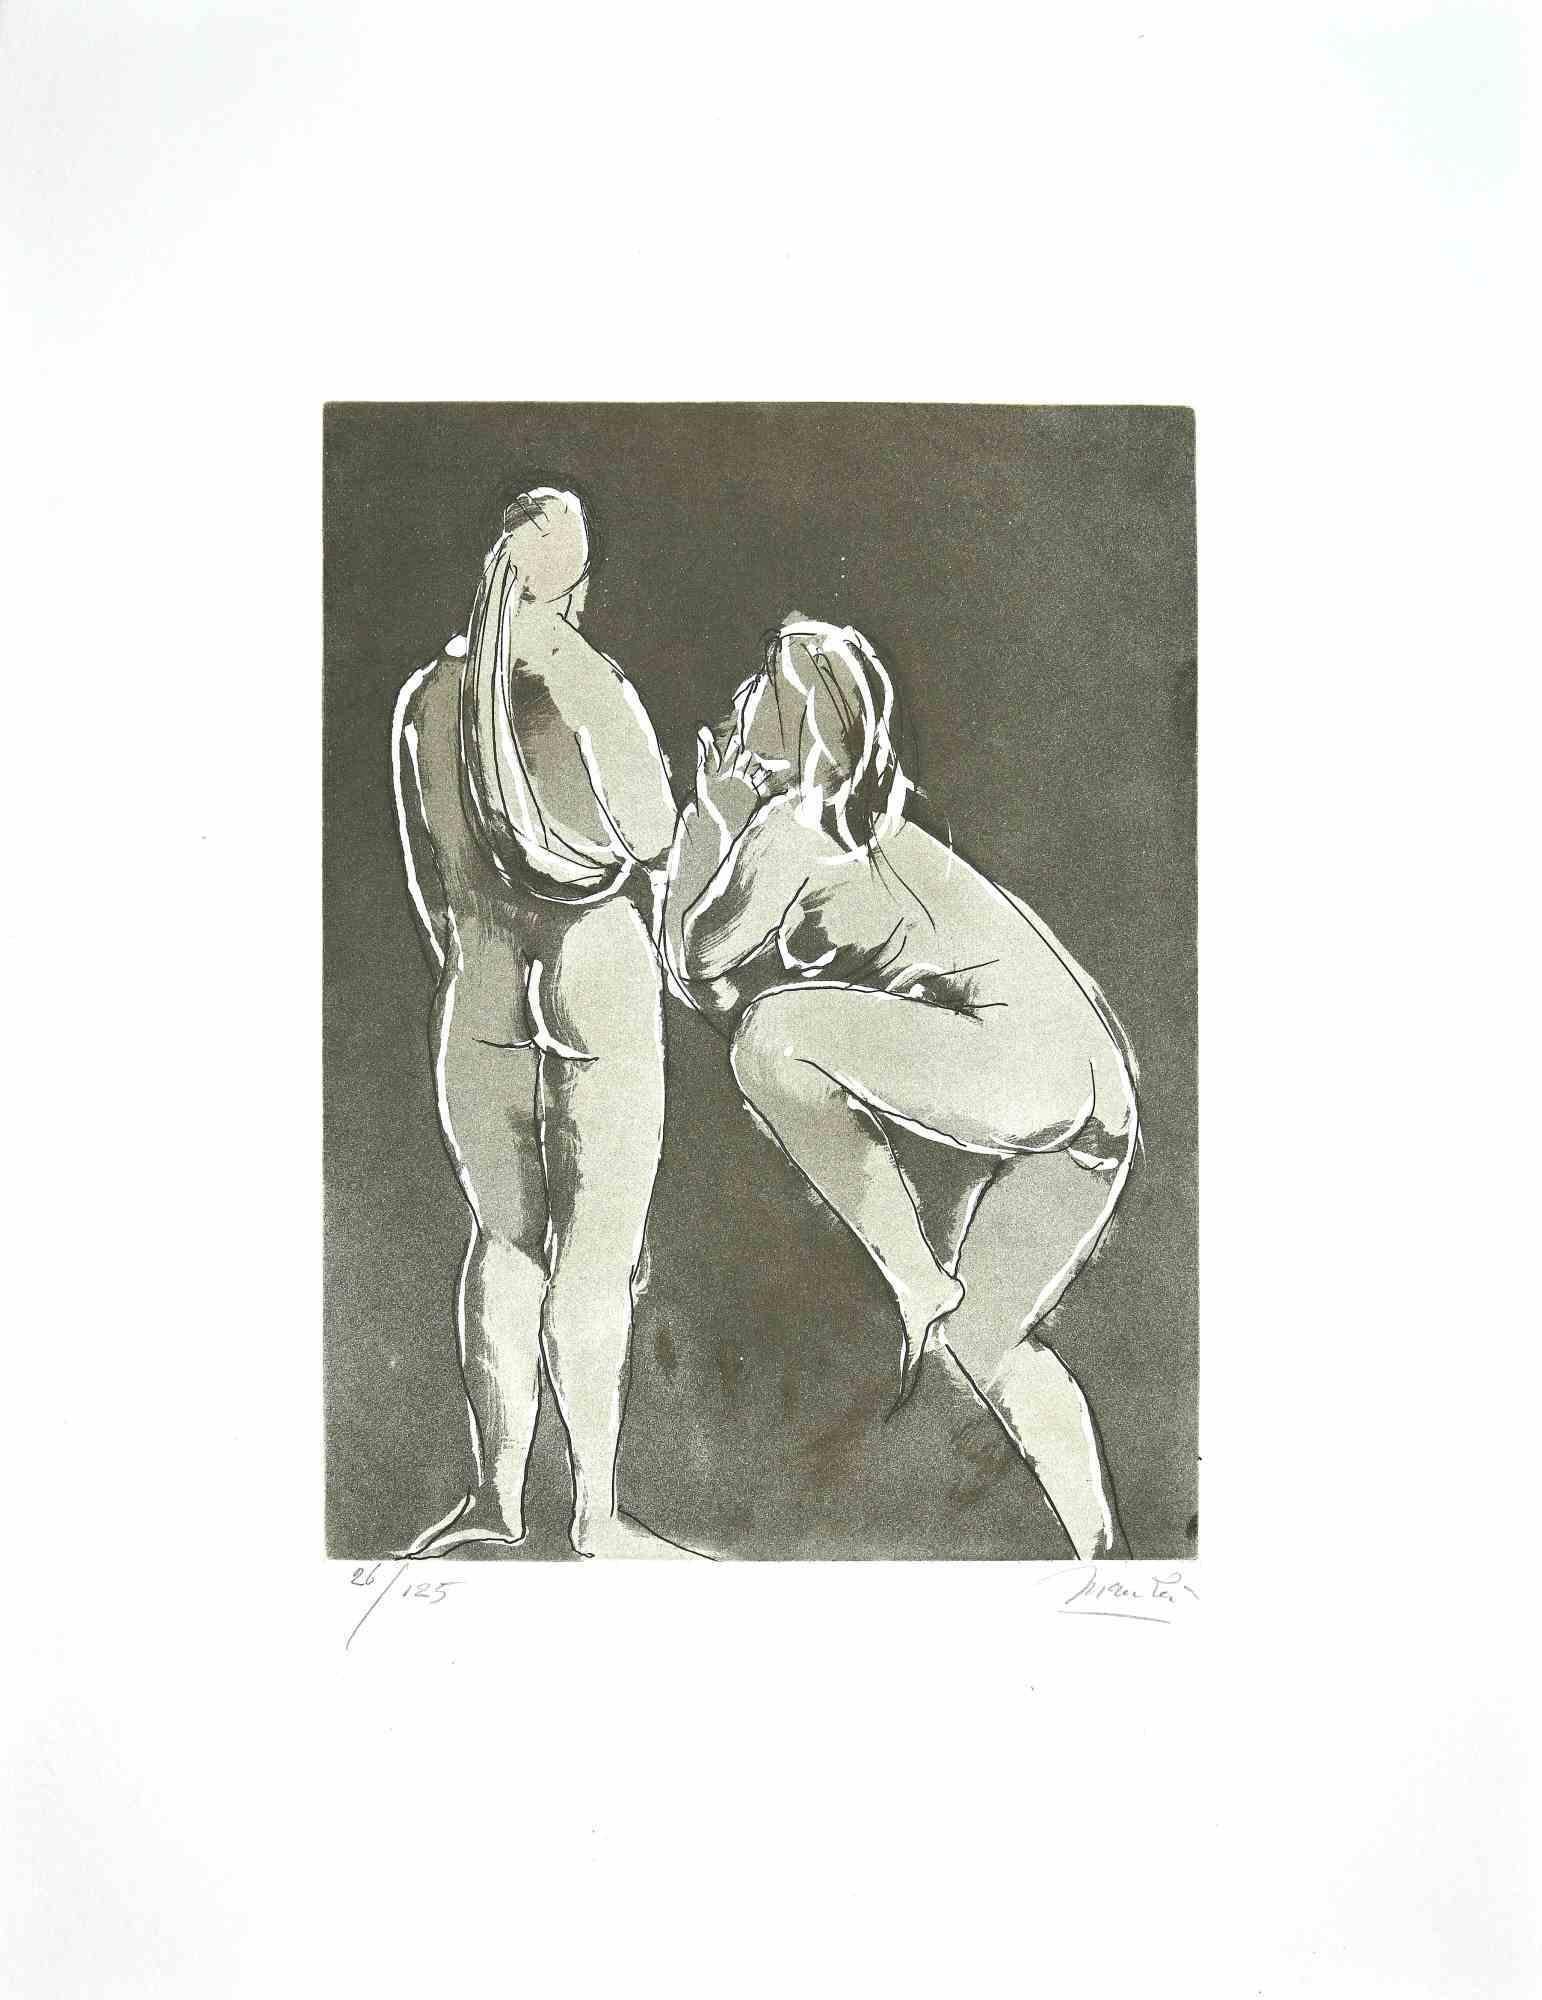 Giacomo Manzú Portrait Print - Dancers - Etching by Giacomo Manzù - 1970s